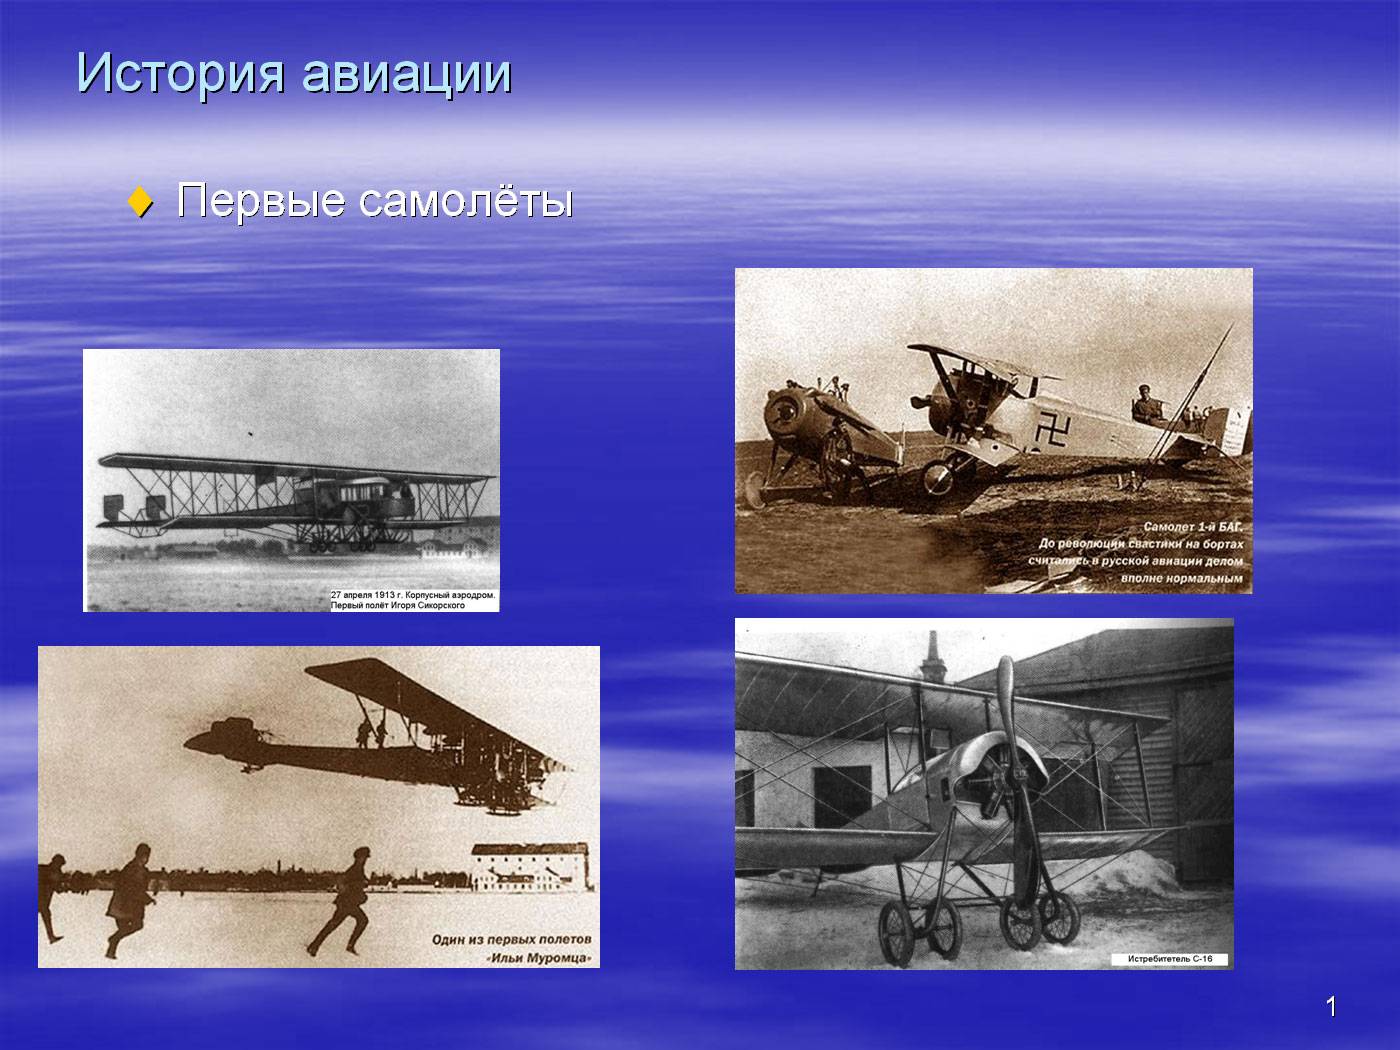 Про первые самолеты. История авиации. Первый самолет. Презентация на тему самолеты. История развития авиации.